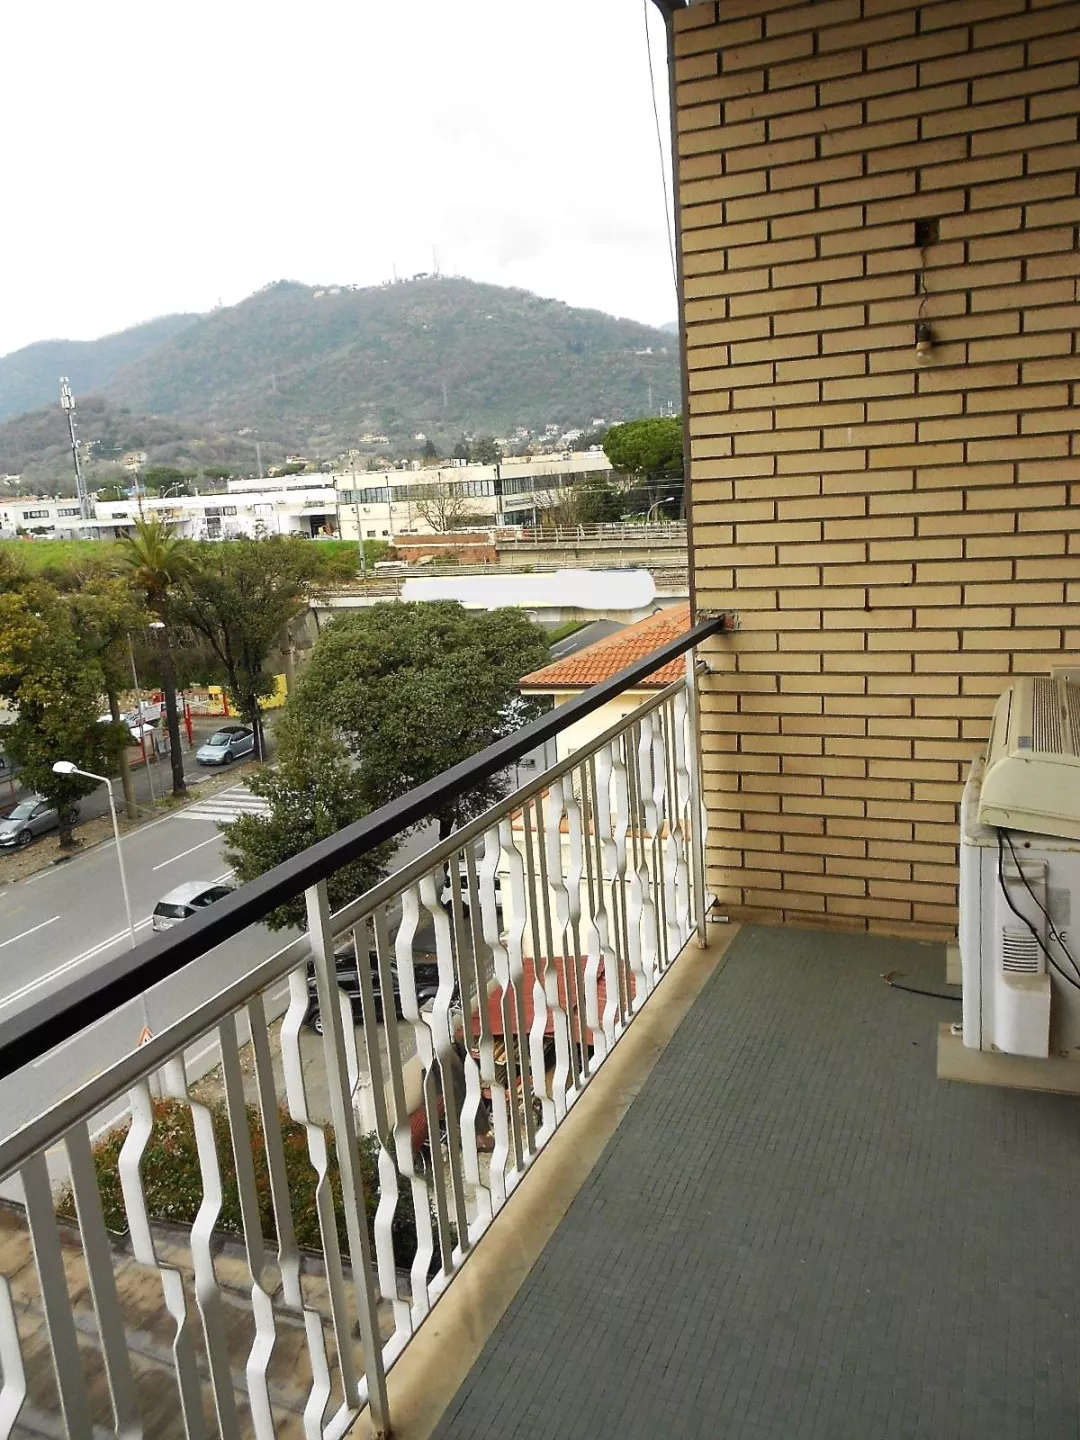 Immagine per Appartamento in vendita a Carrara Viale XX Settembre